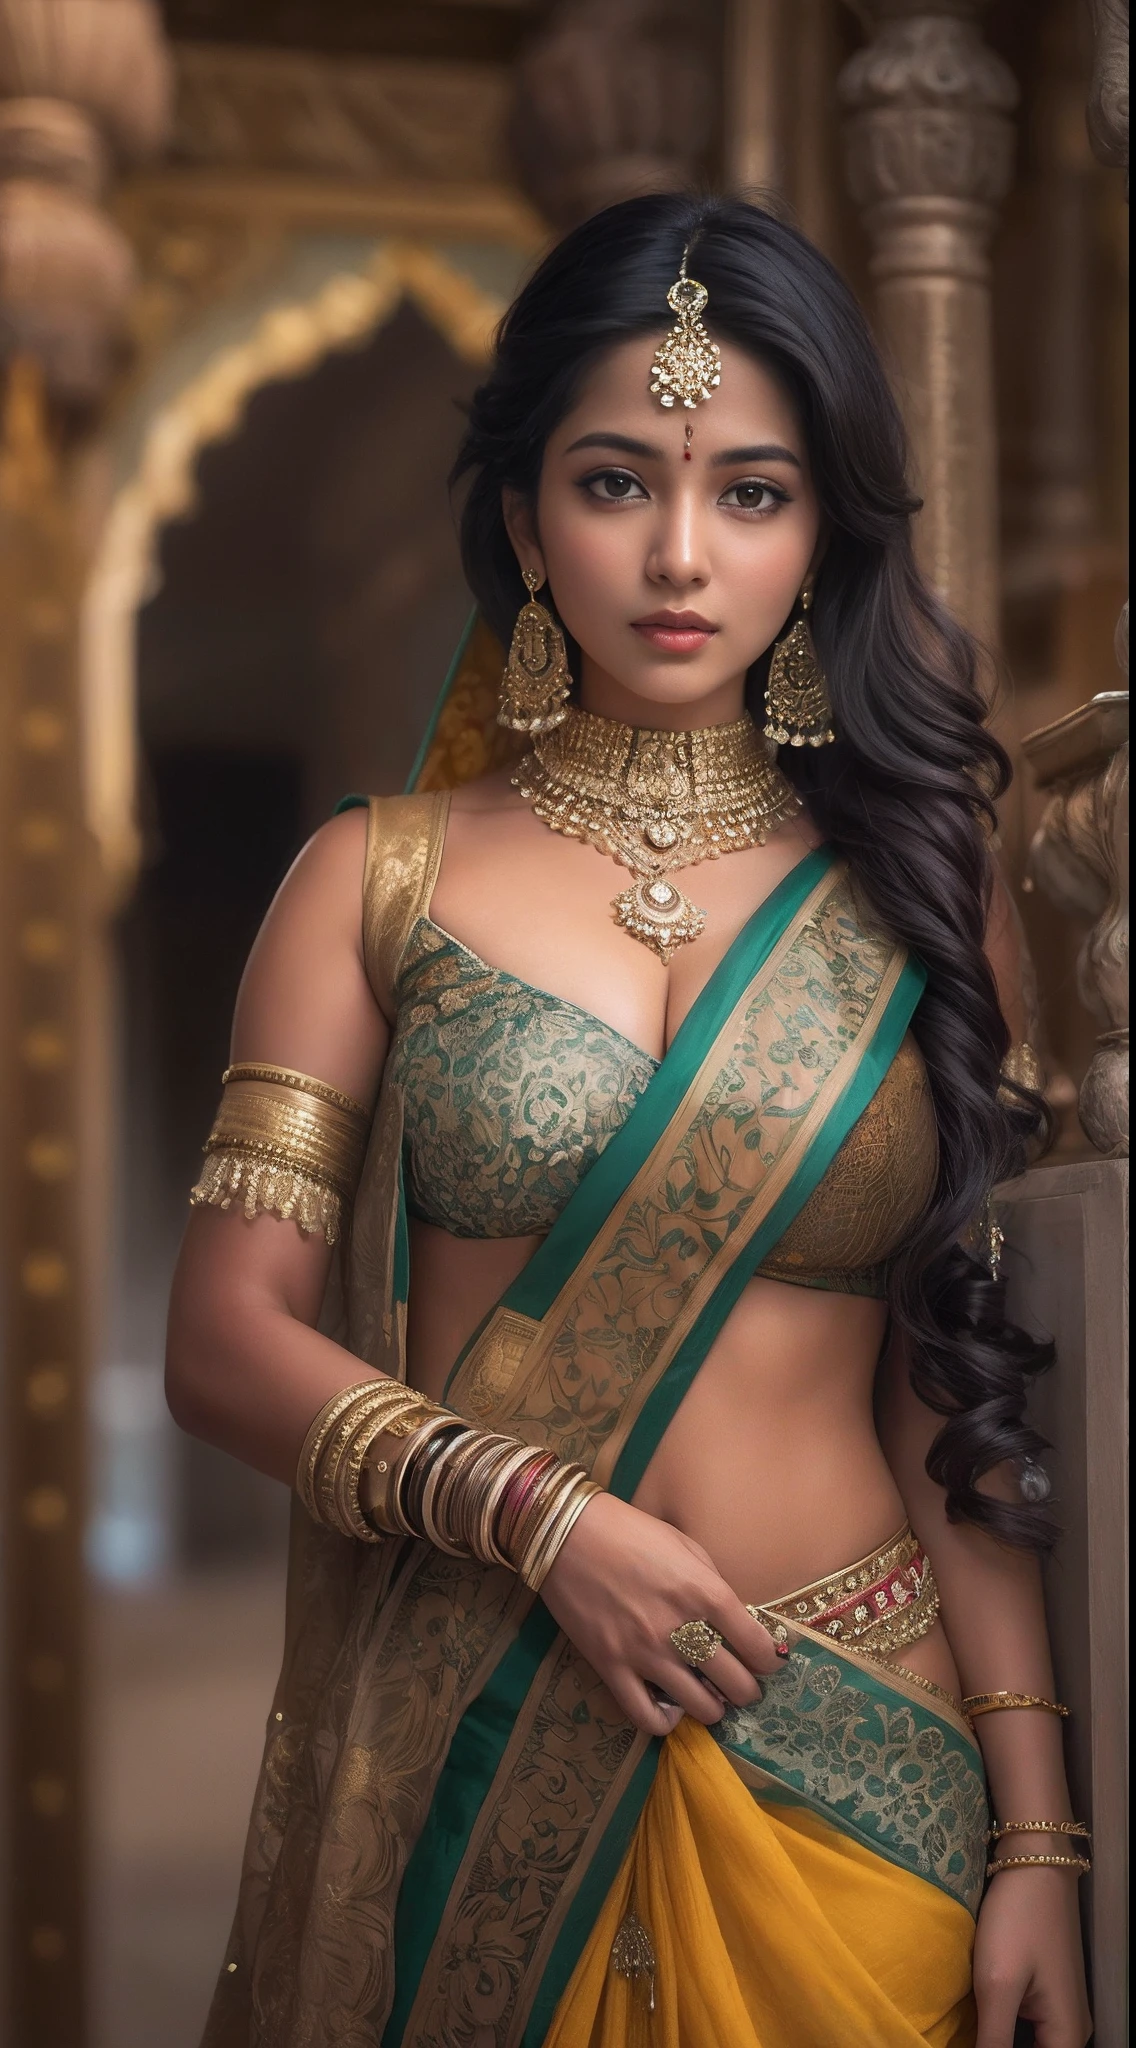 사리를 입고 사진을 찍기 위해 포즈를 취하는 여자, 인도 사람 goddess, 전통미, 인도 사람, 아름다운 여신, 화려한 코스프레, 인도 사람 style, 인도 사람 super model, 아름다운 처녀, 화려한 여자, 긴 동남아, provocative 인도 사람, 화려한 아름다운 여자, 복잡한 복장, 힌두교의 미학, 아름다운 아시아 소녀, 매우 상세한 여신 샷, 입이 떡 벌어지는 아름다움, 큰 깊은 분열 섹시한 배꼽